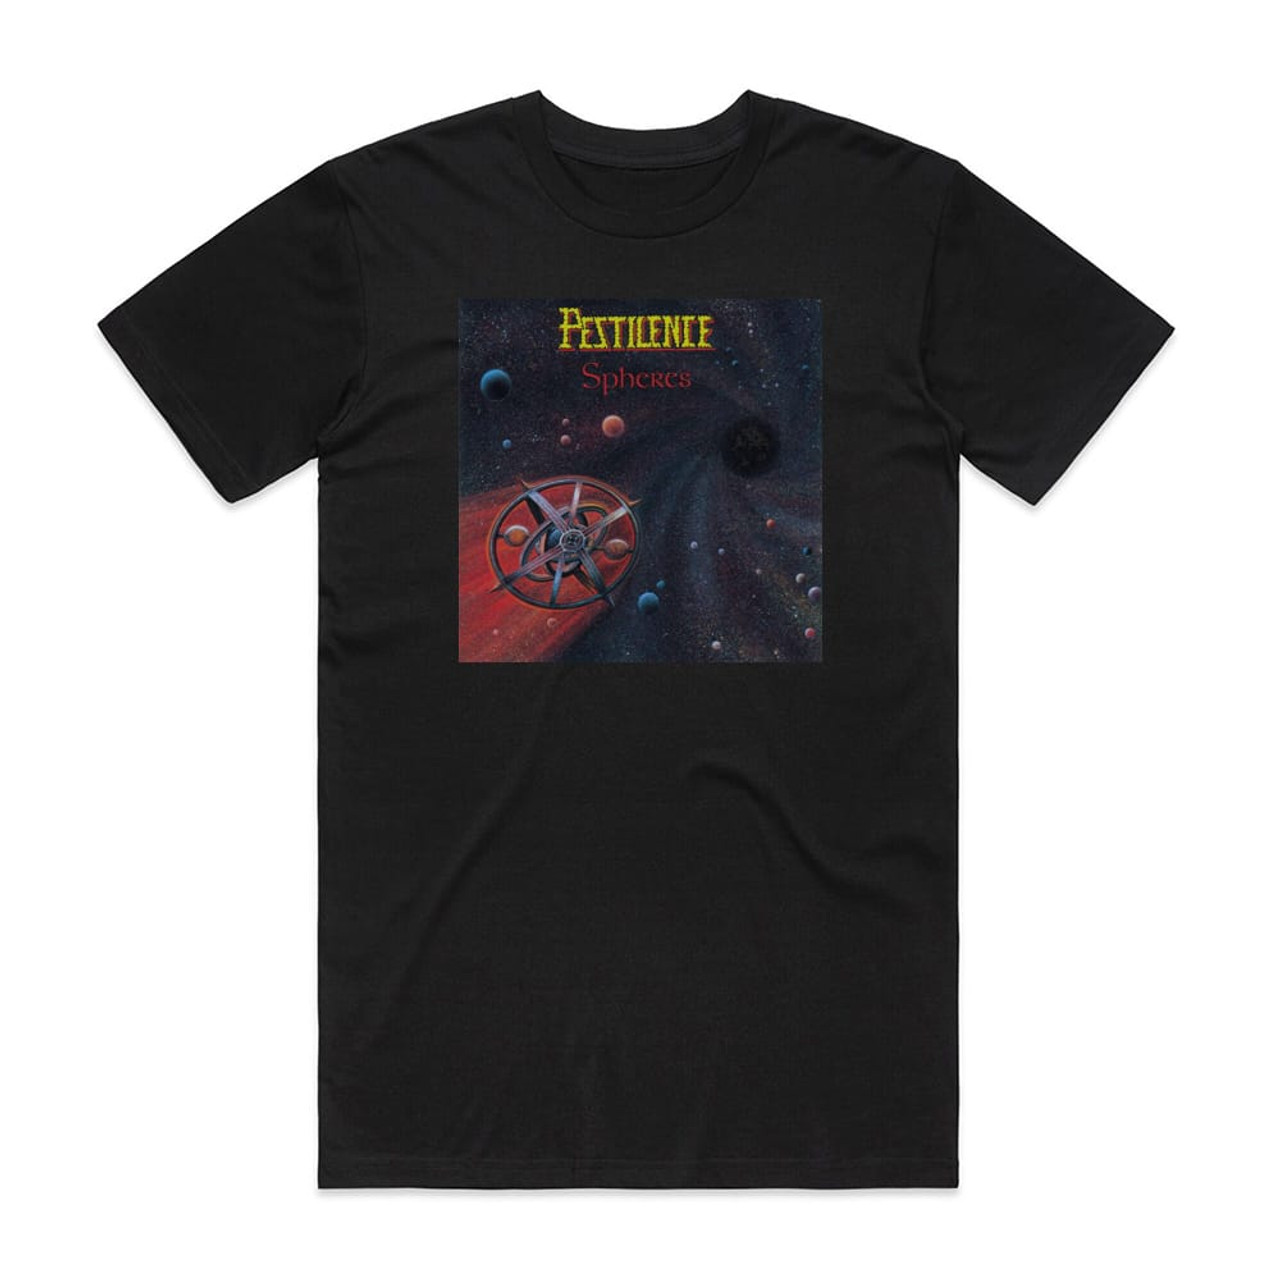 Pestilence Spheres Album Cover T-Shirt Black